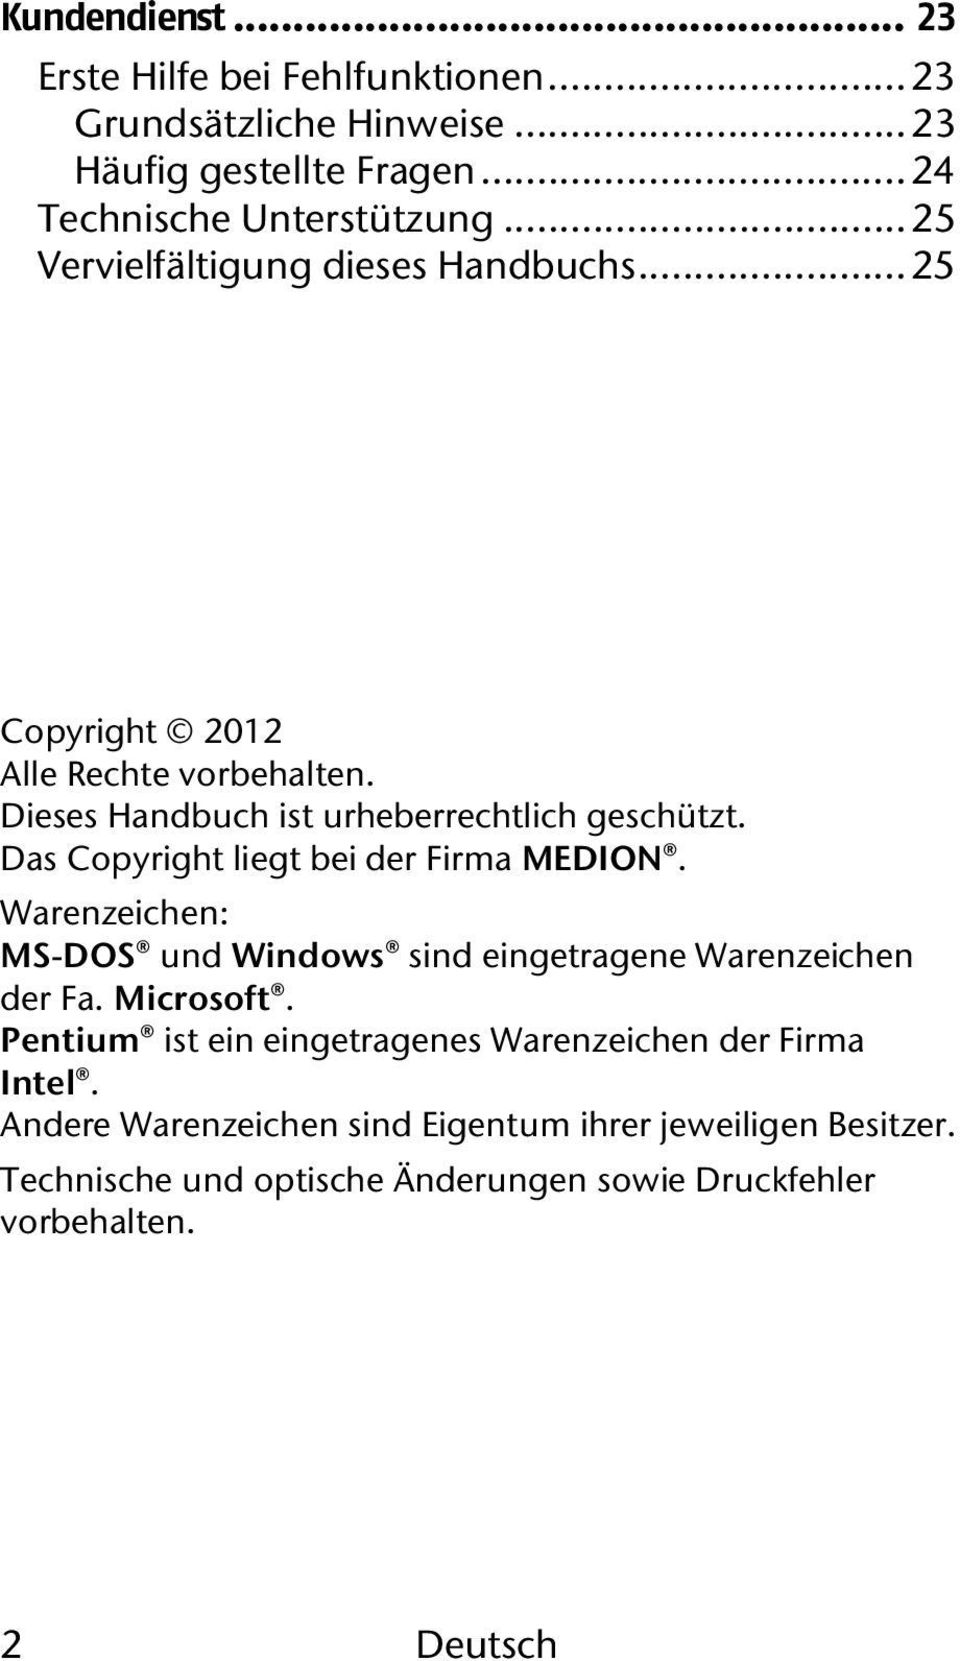 Das Copyright liegt bei der Firma MEDION. Warenzeichen: MS-DOS und Windows sind eingetragene Warenzeichen der Fa. Microsoft.